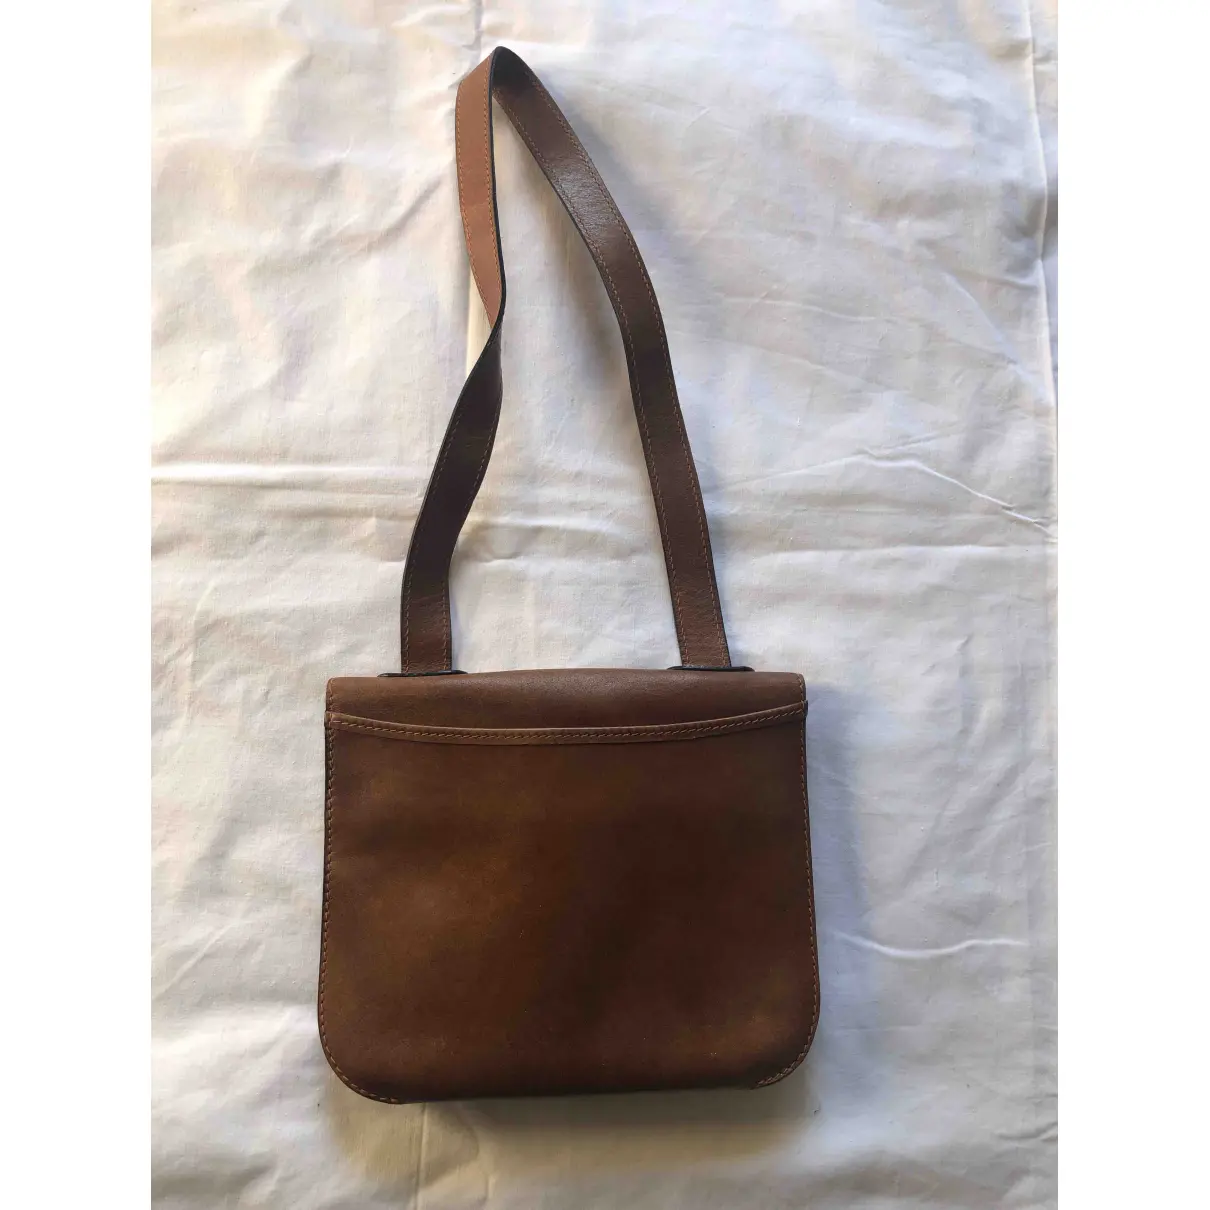 Buy Loewe Leather handbag online - Vintage